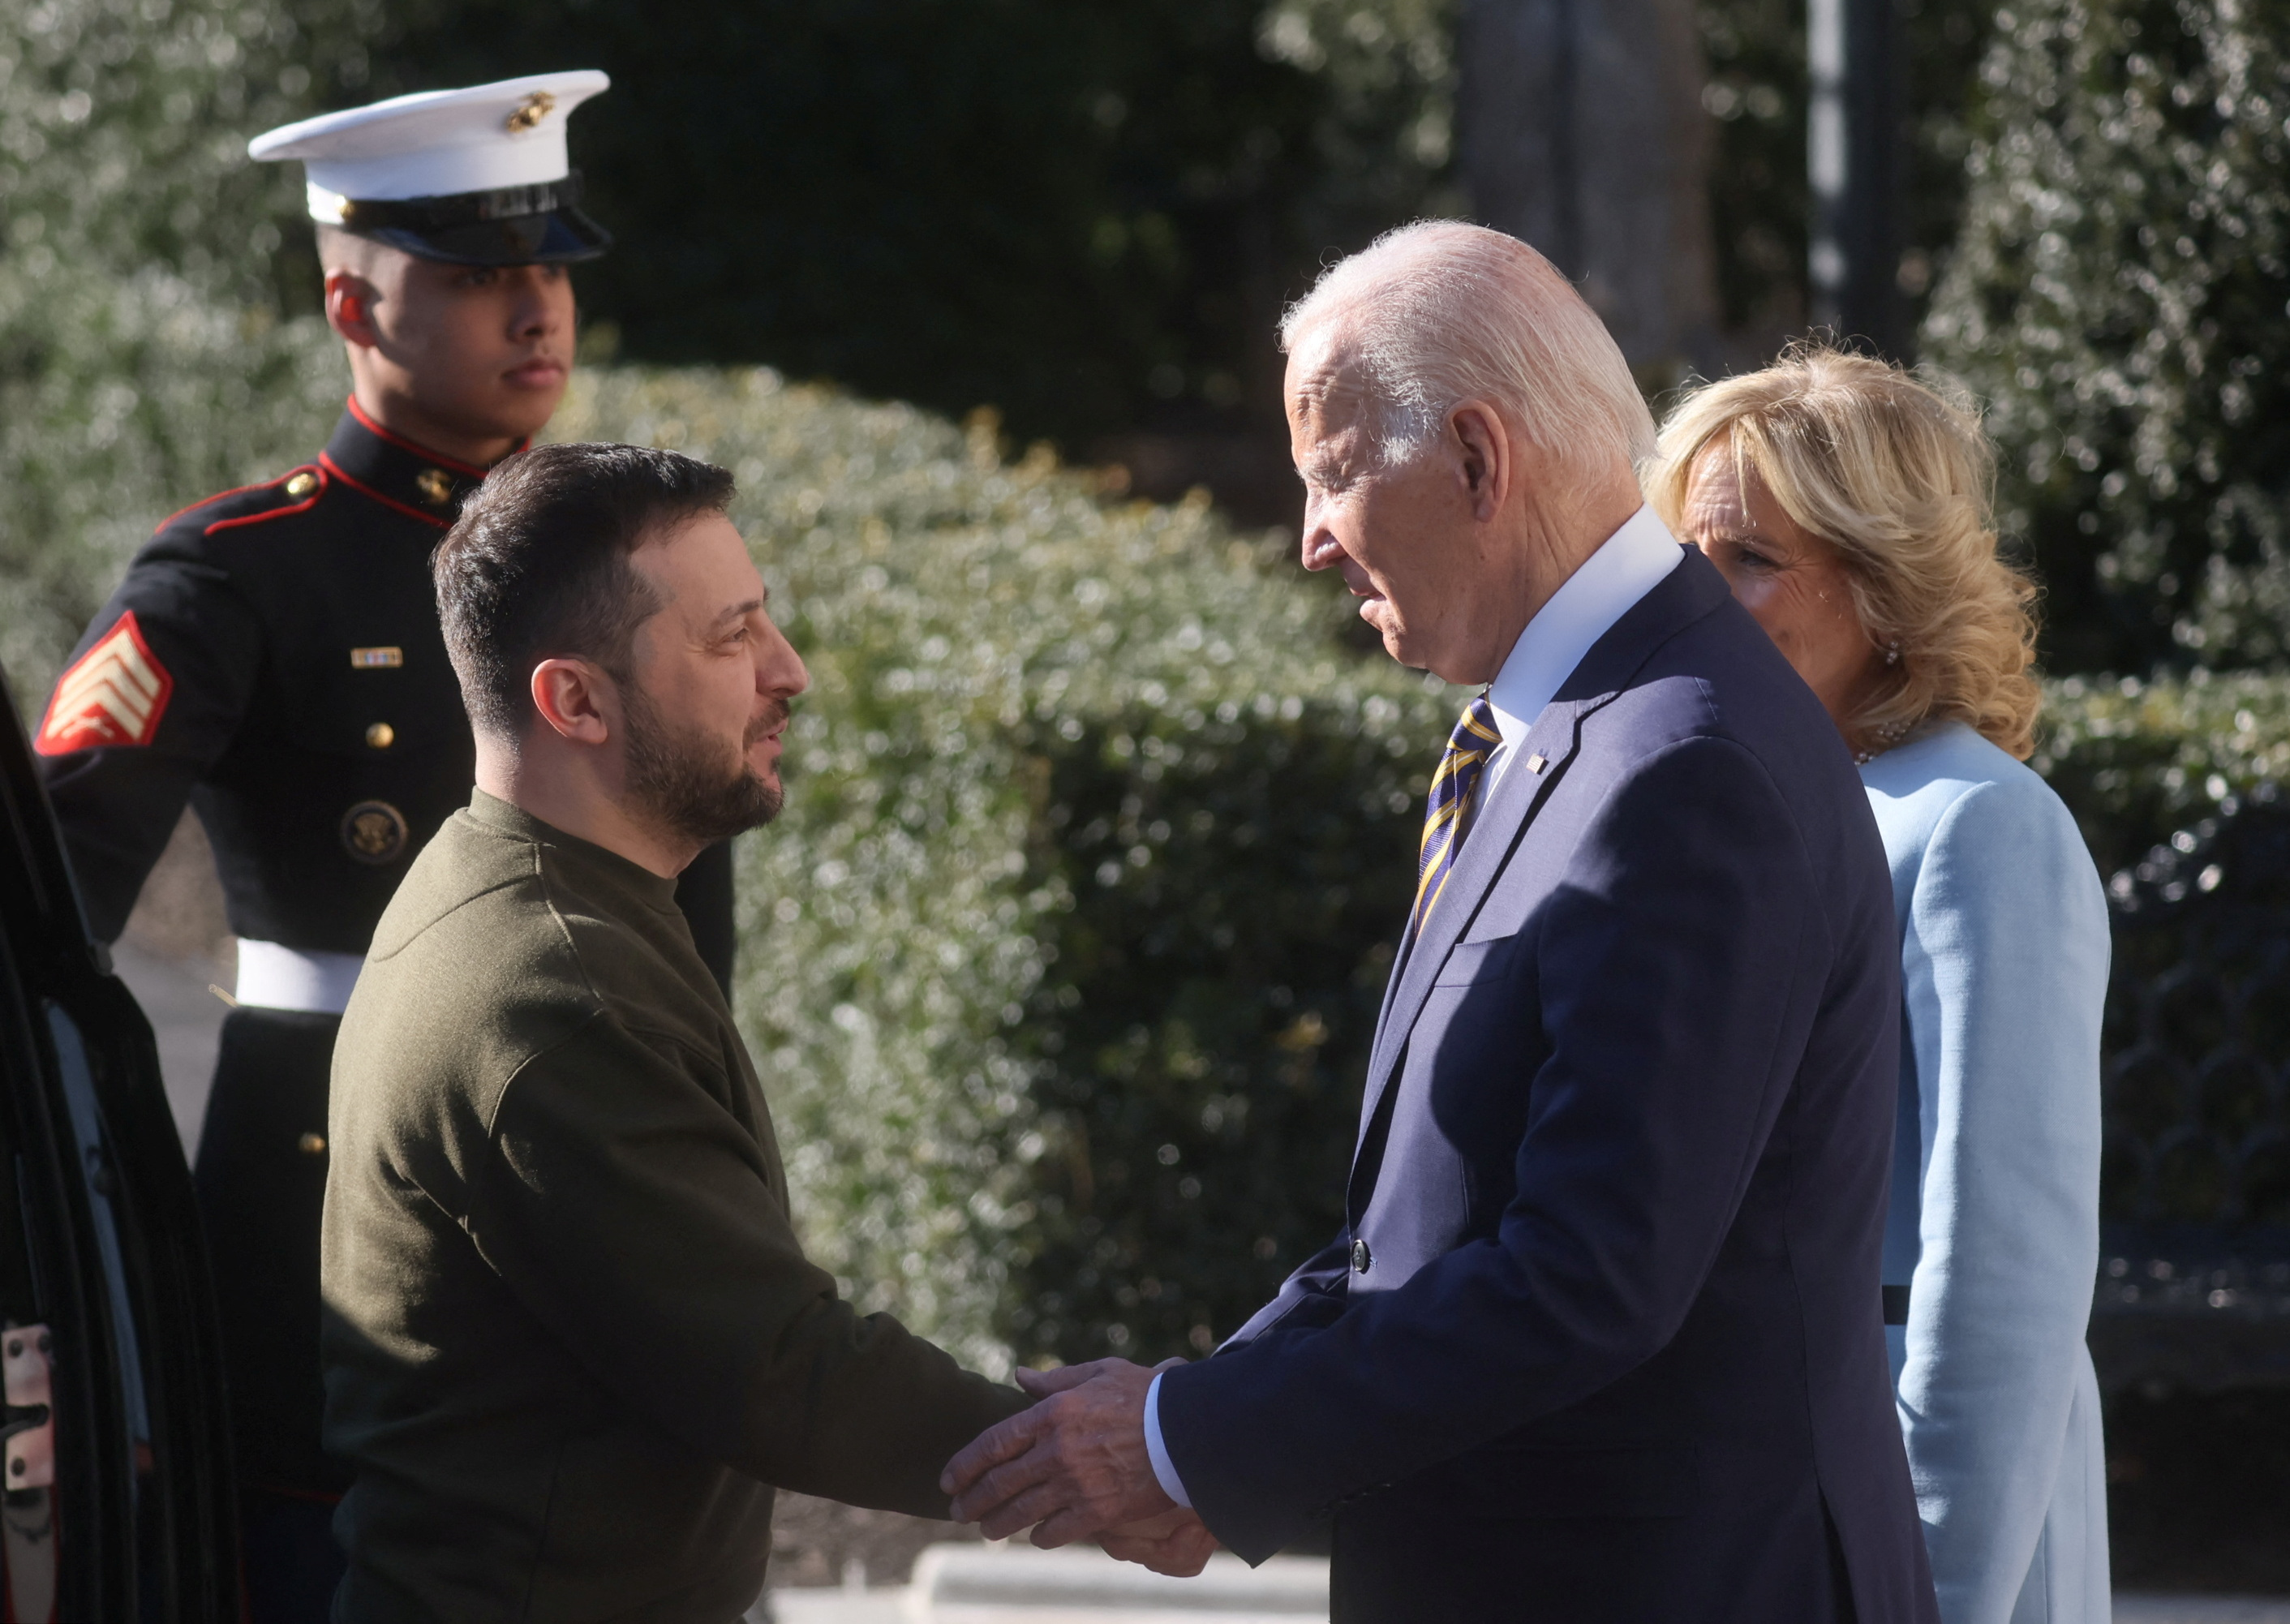 U.S. President Biden welcomes Ukraine's President Zelenskiy at the White House in Washington